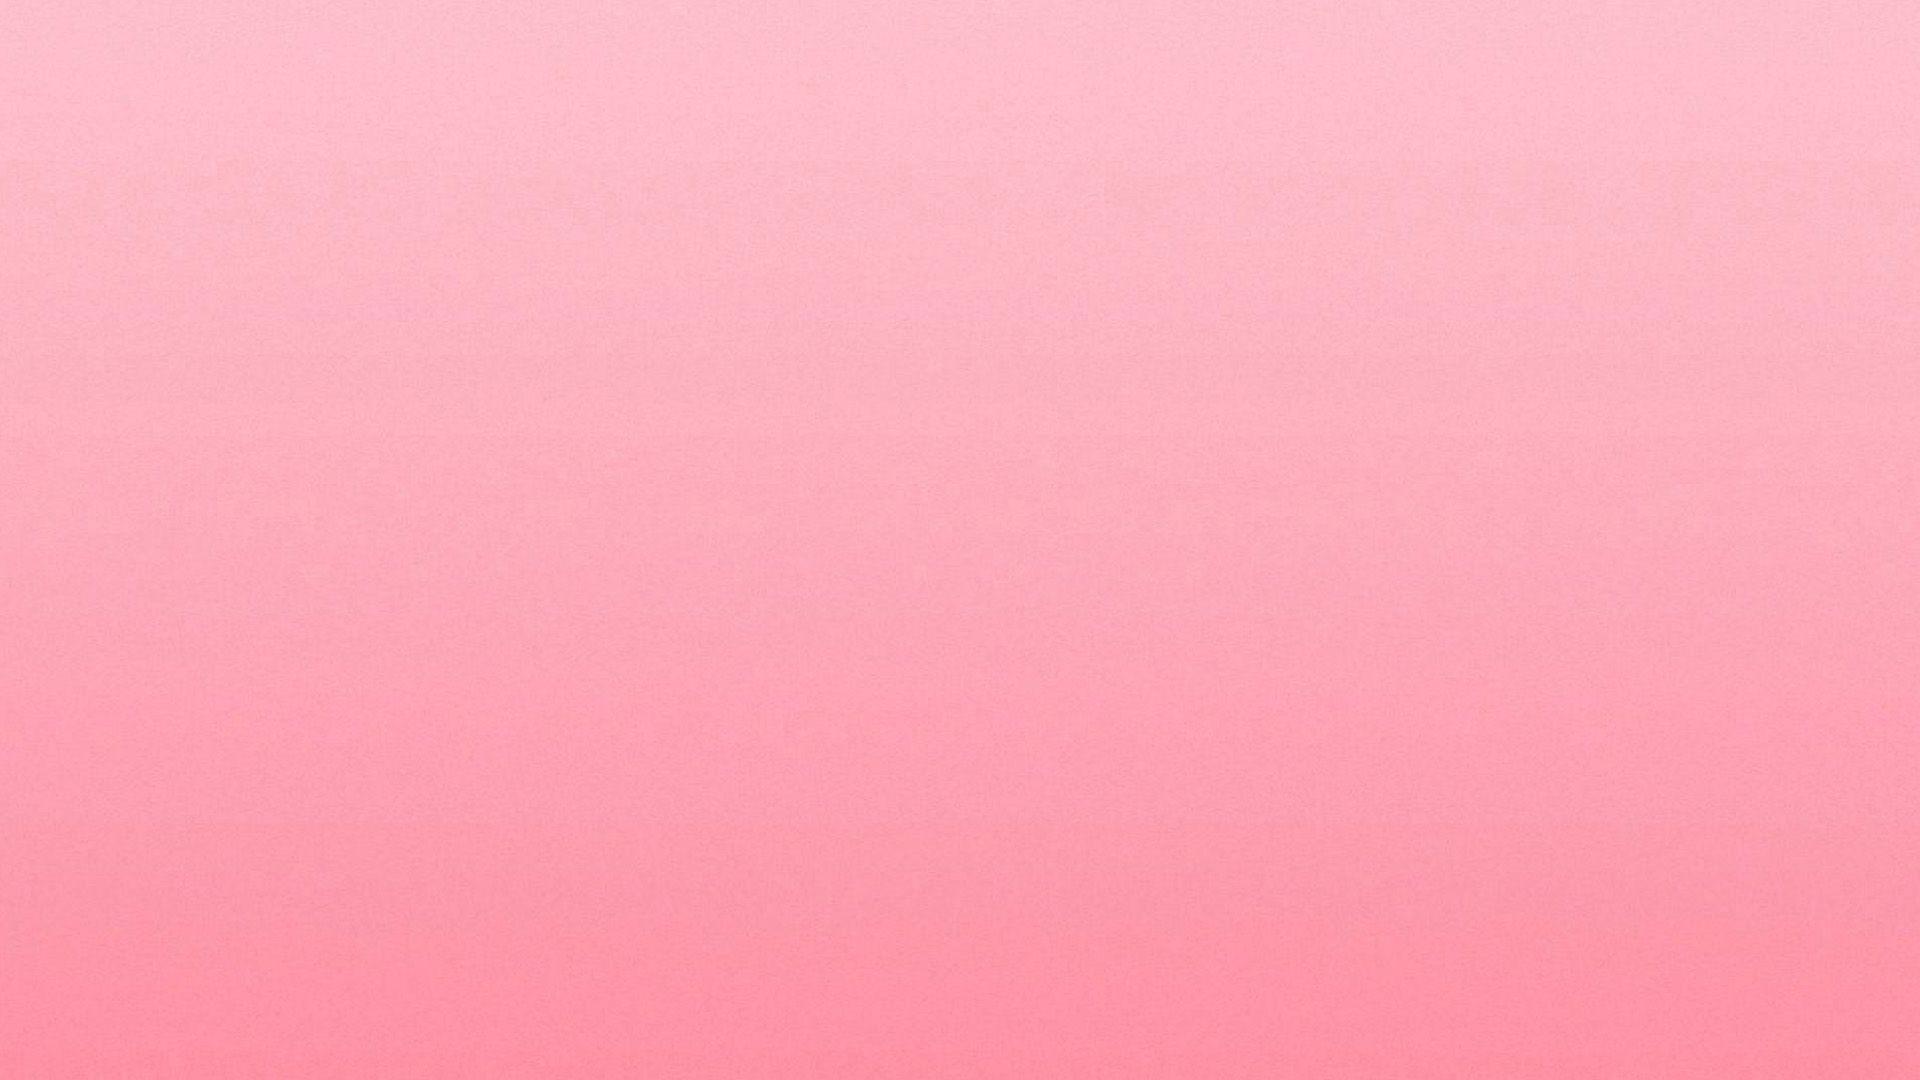 Hình nền đơn giản với màu hồng tinh tế - Tạo điểm nhấn cho bức ảnh của bạn với hình nền màu hồng trẻ trung và tinh tế. Màu hồng dịu nhẹ sẽ giúp tôn lên vẻ đẹp tự nhiên cho bức ảnh của bạn. Cùng truy cập hình ảnh để cảm nhận sự tinh tế của nó!